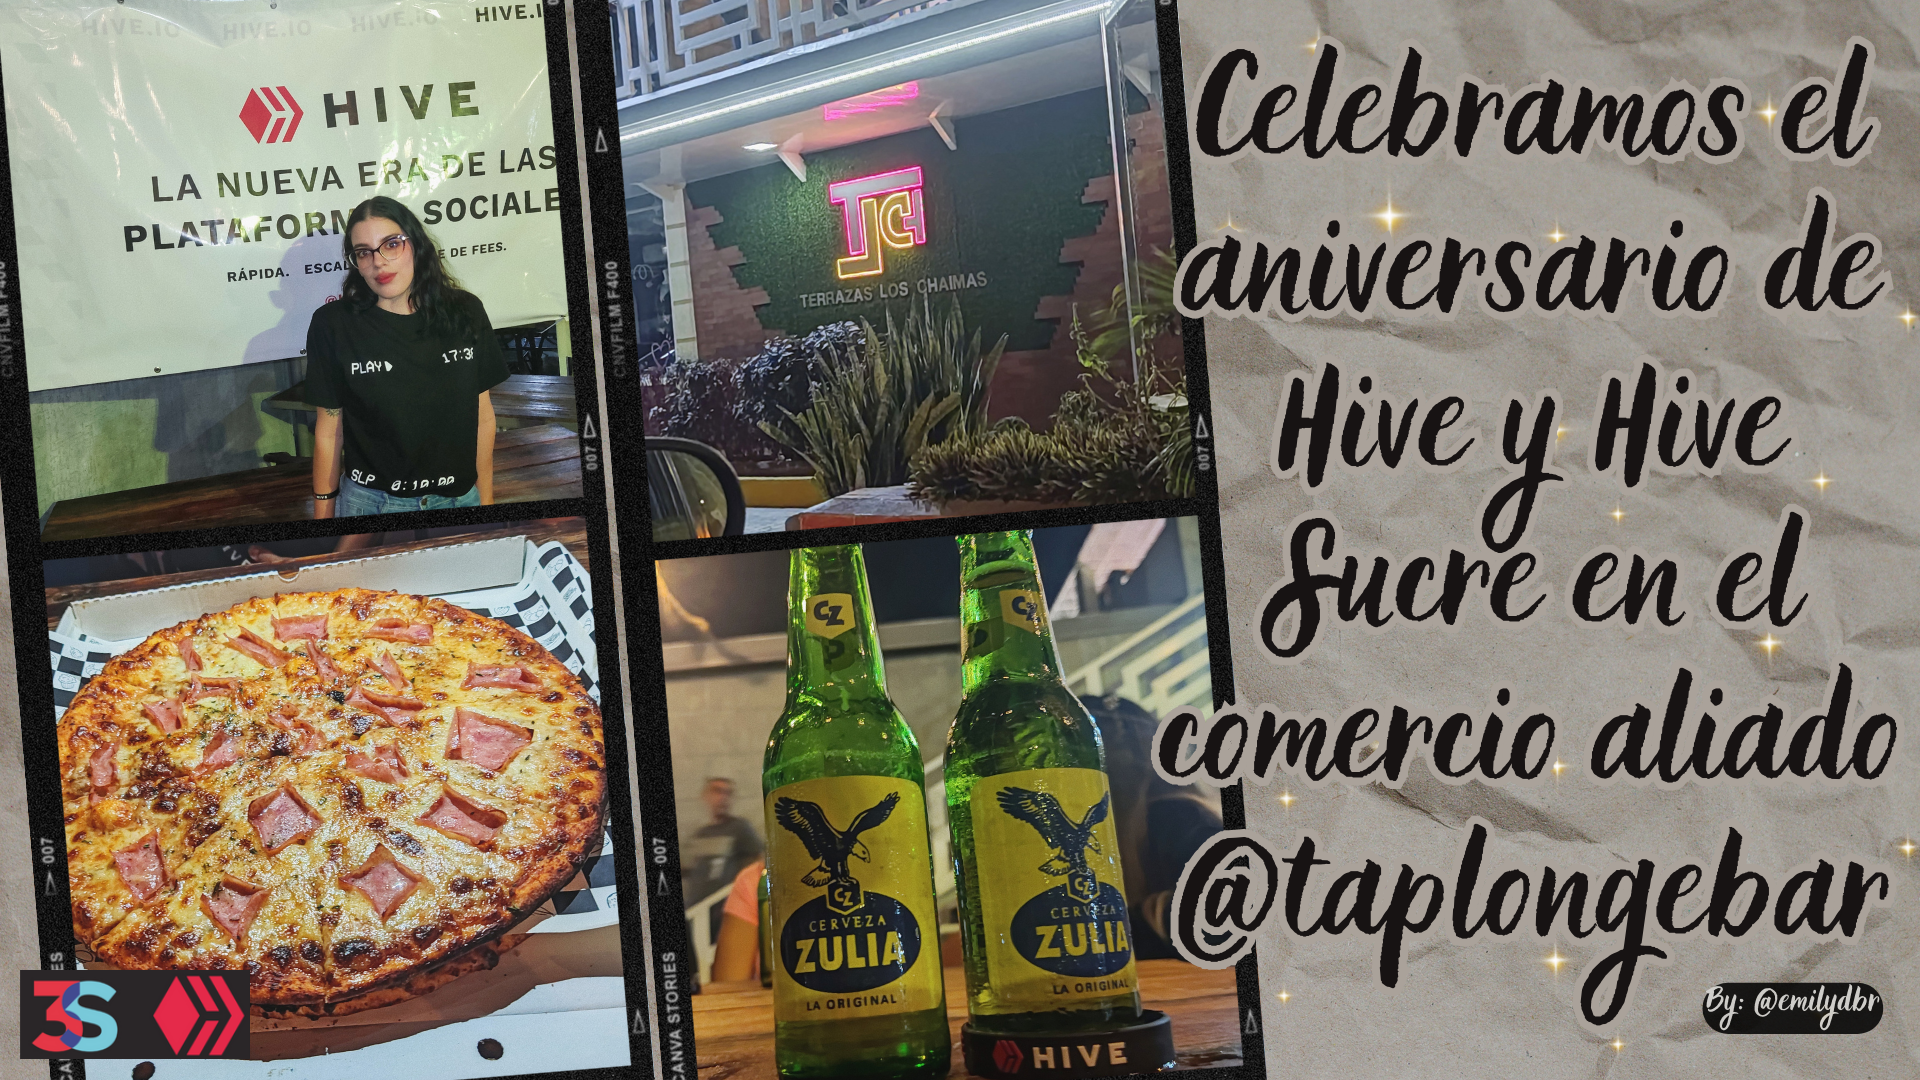 Celebramos el aniversario de Hive y Hive Sucre en el comercio aliado @taplongebar.png